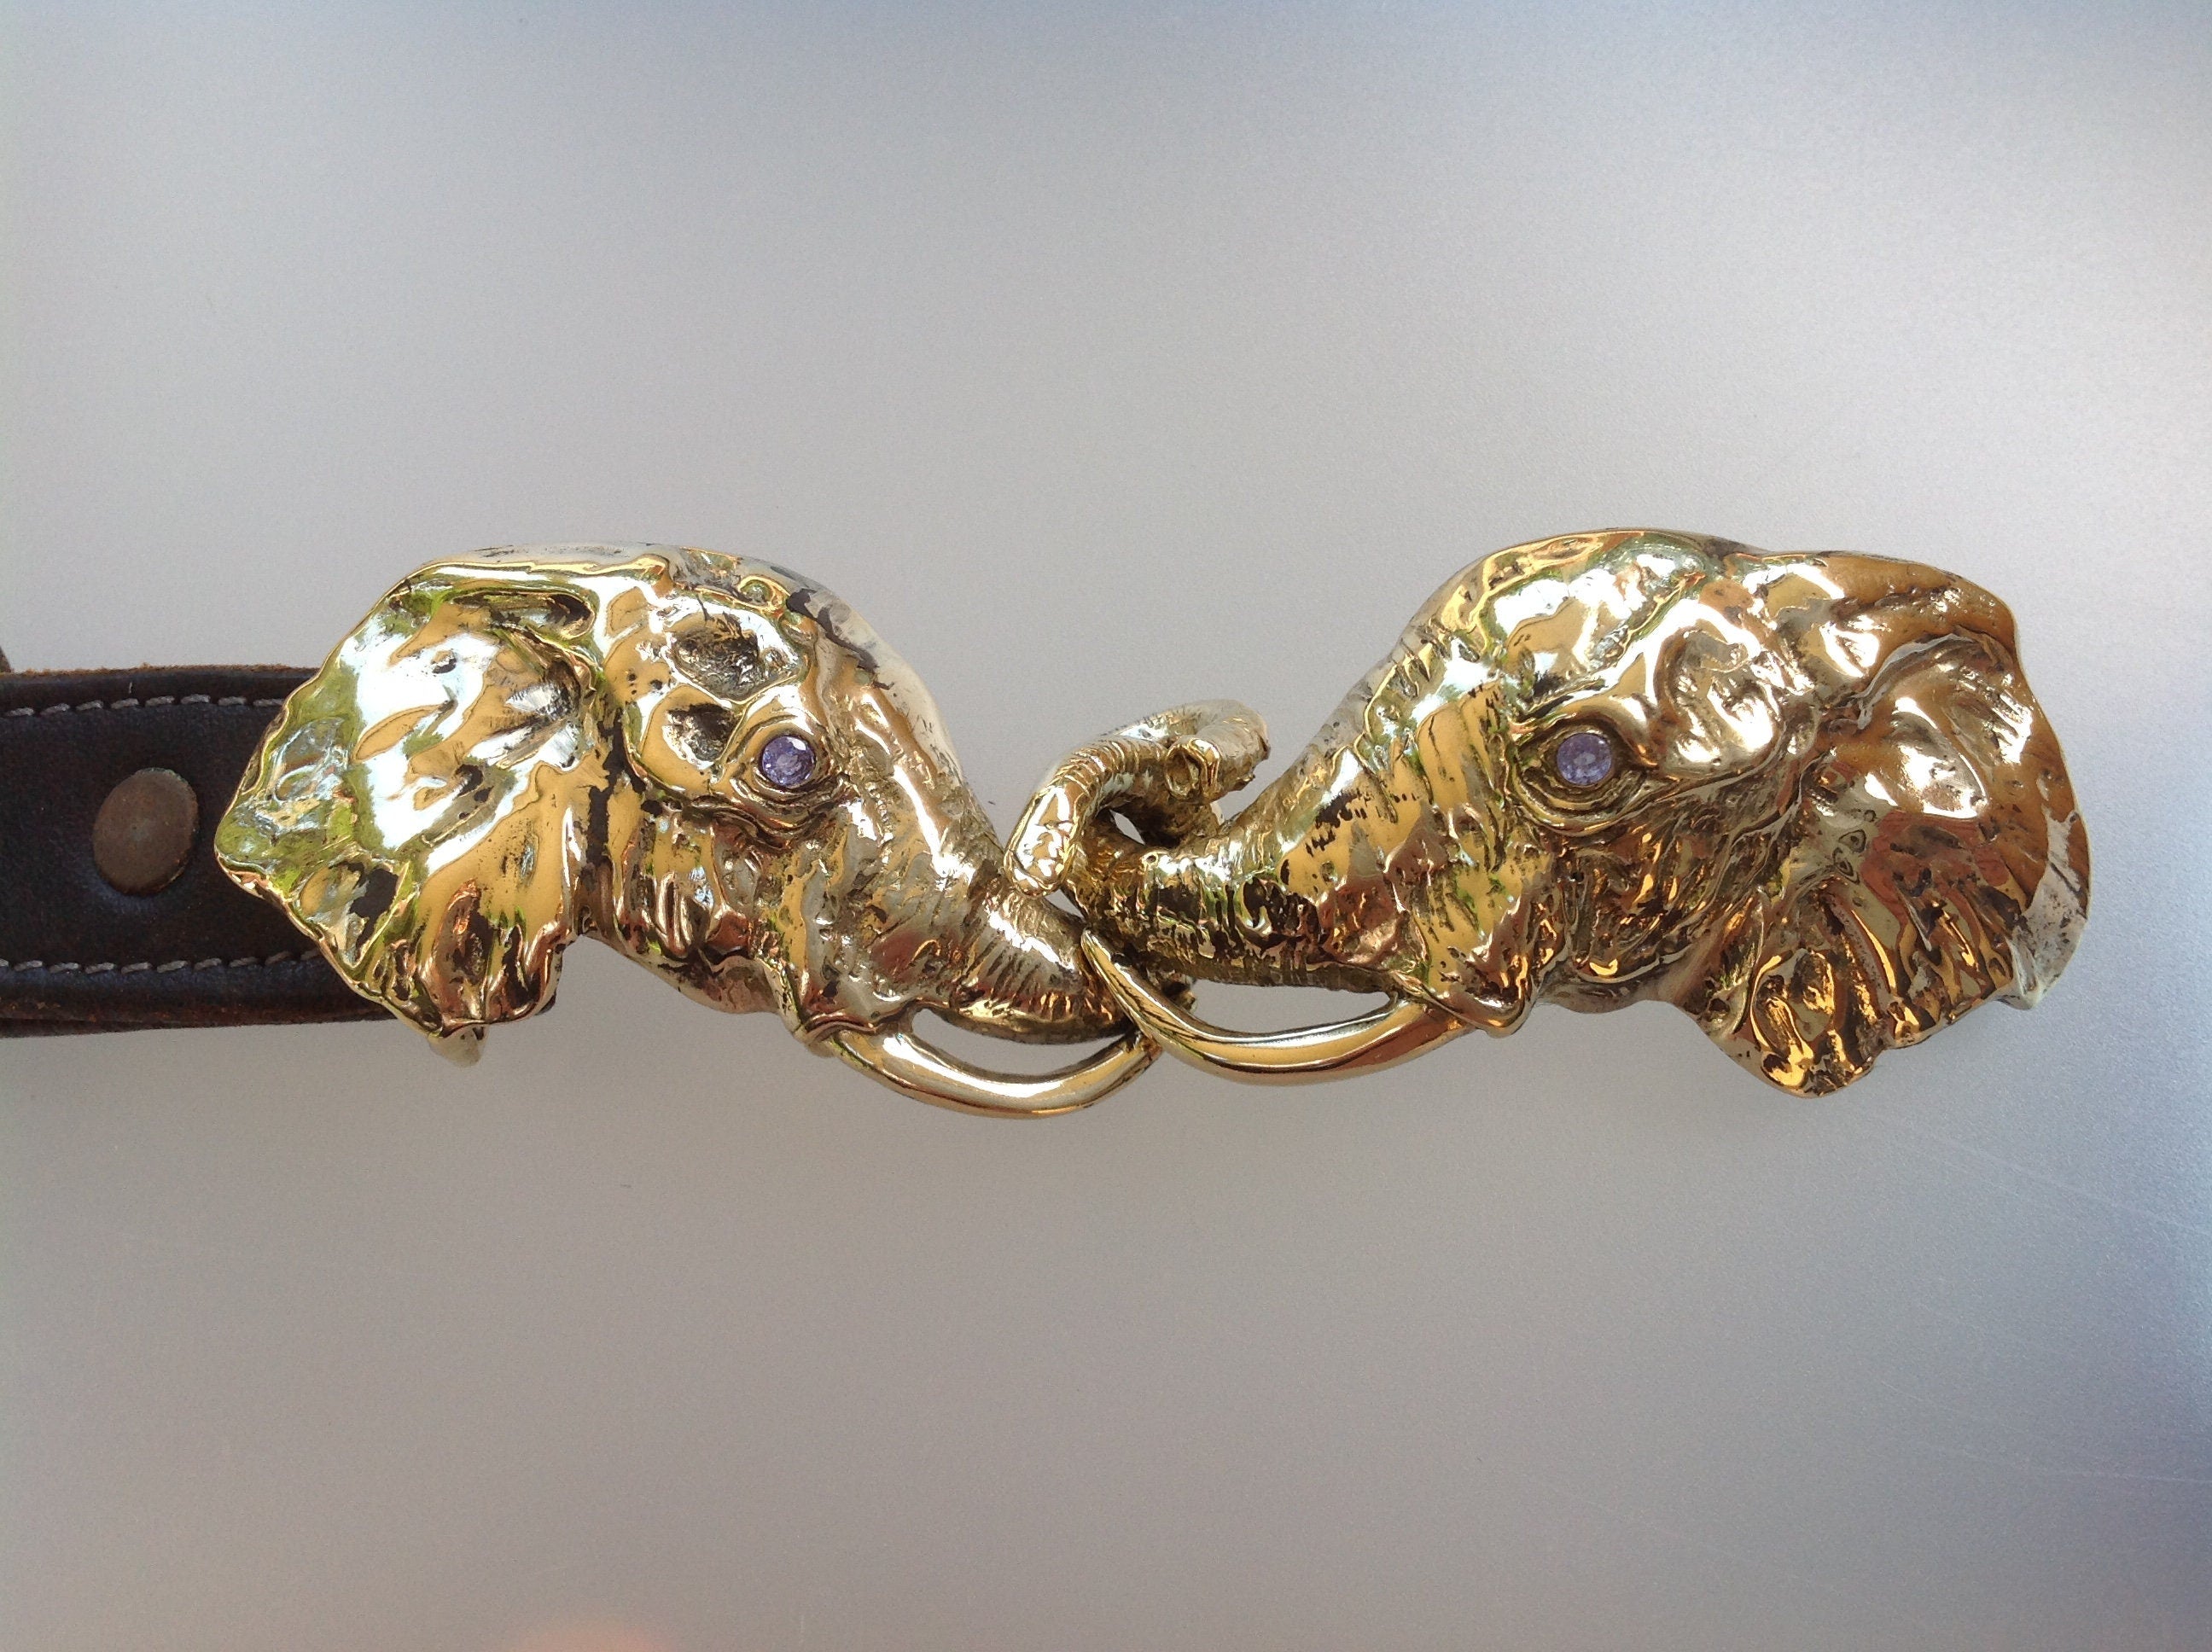 Articulating Elephants belt buckle Sculpture jewelry in bronze NO